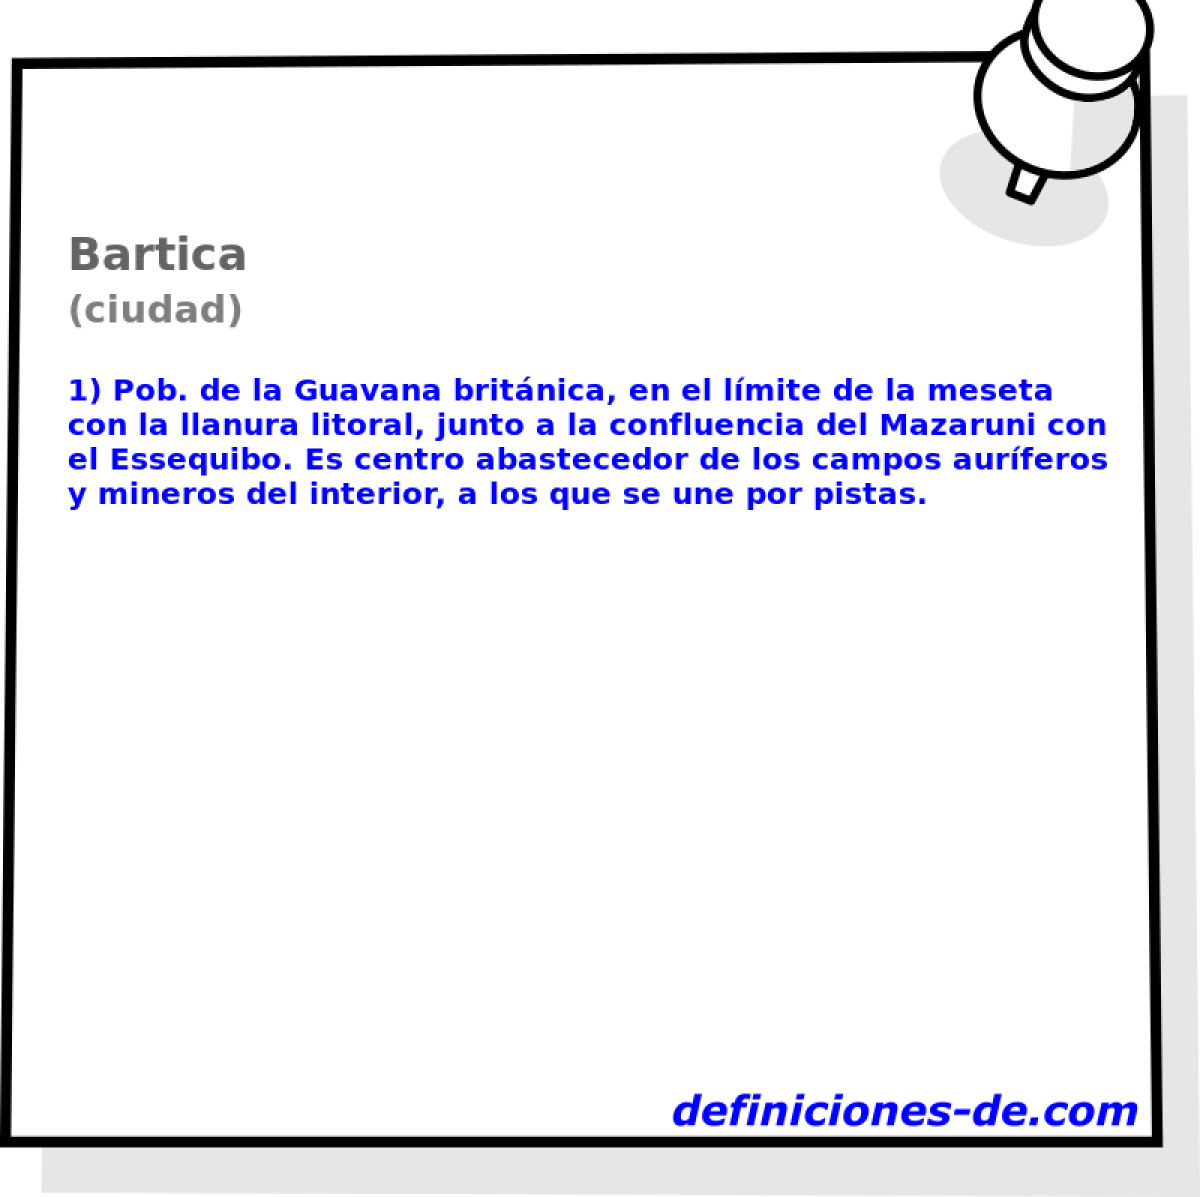 Bartica (ciudad)